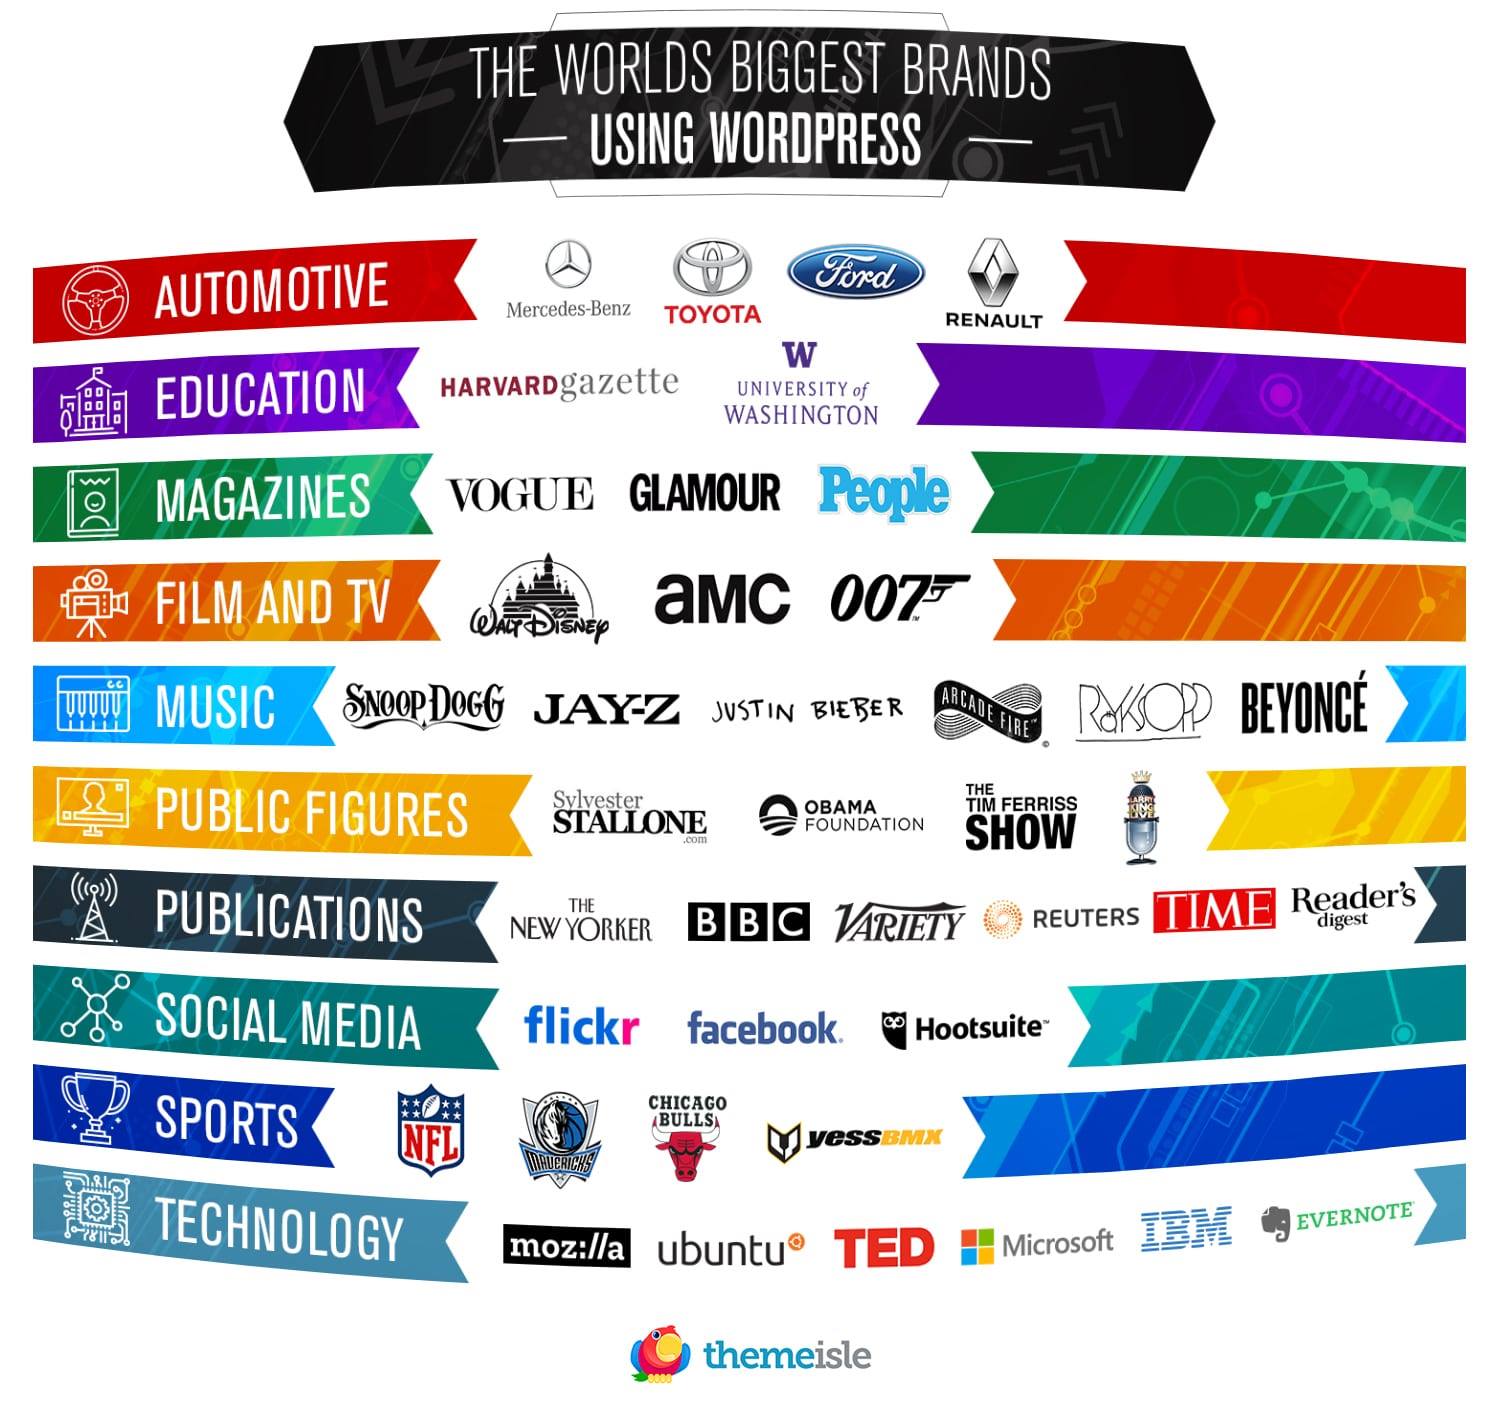 Hơn 50 thương hiệu, các trang web lớn sử dụng WordPress